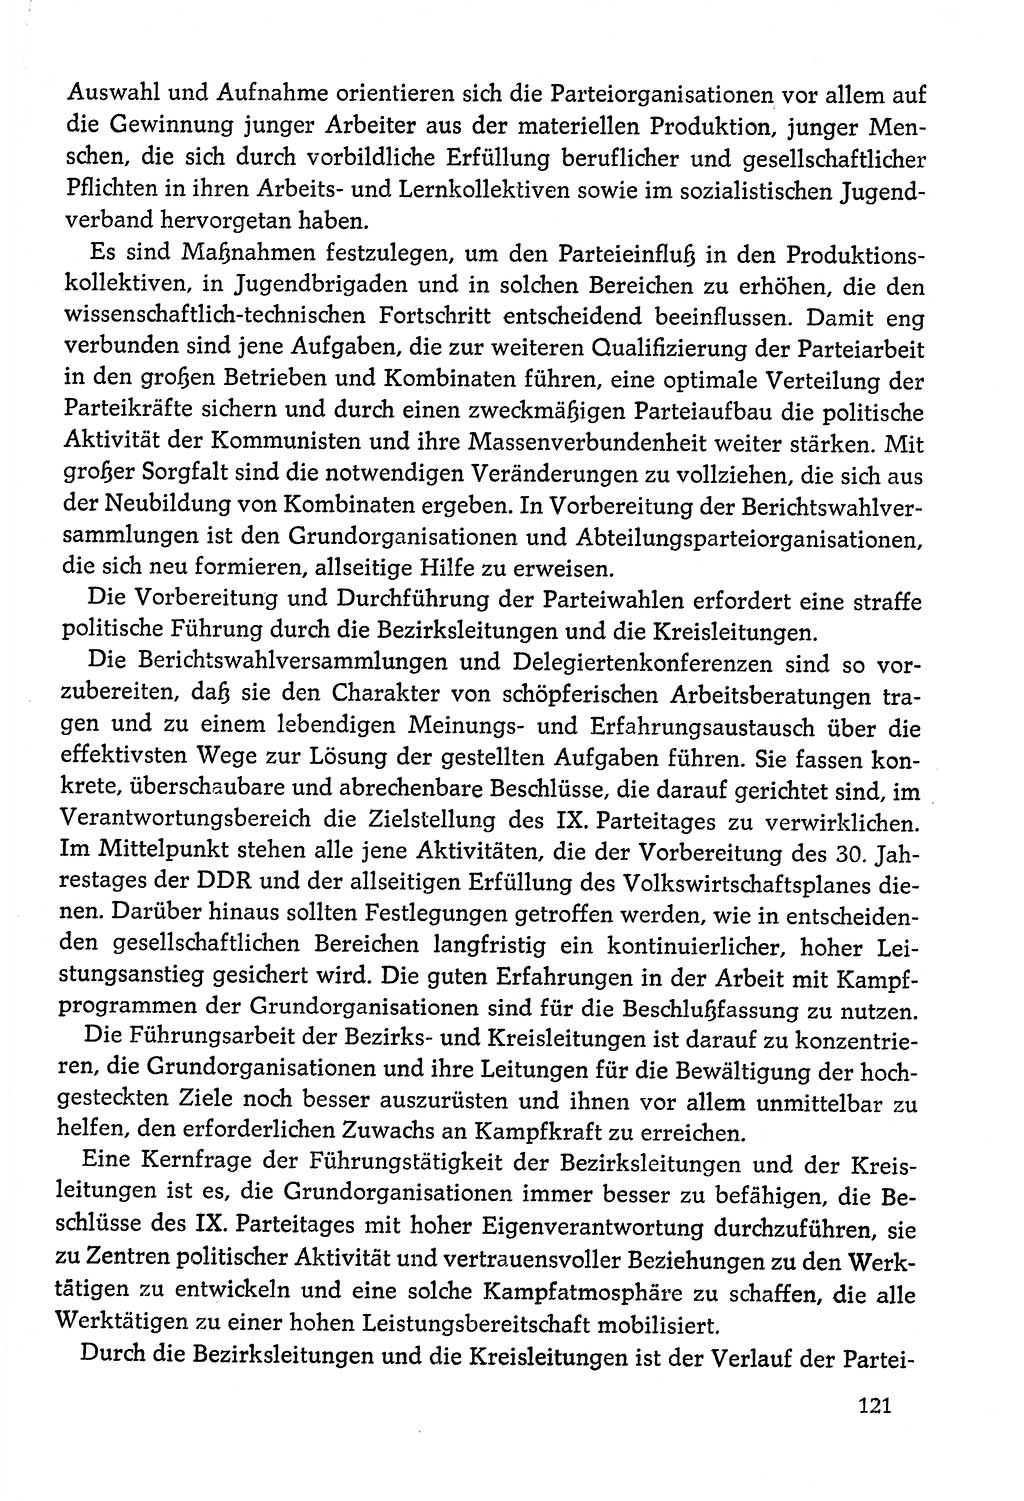 Dokumente der Sozialistischen Einheitspartei Deutschlands (SED) [Deutsche Demokratische Republik (DDR)] 1978-1979, Seite 121 (Dok. SED DDR 1978-1979, S. 121)